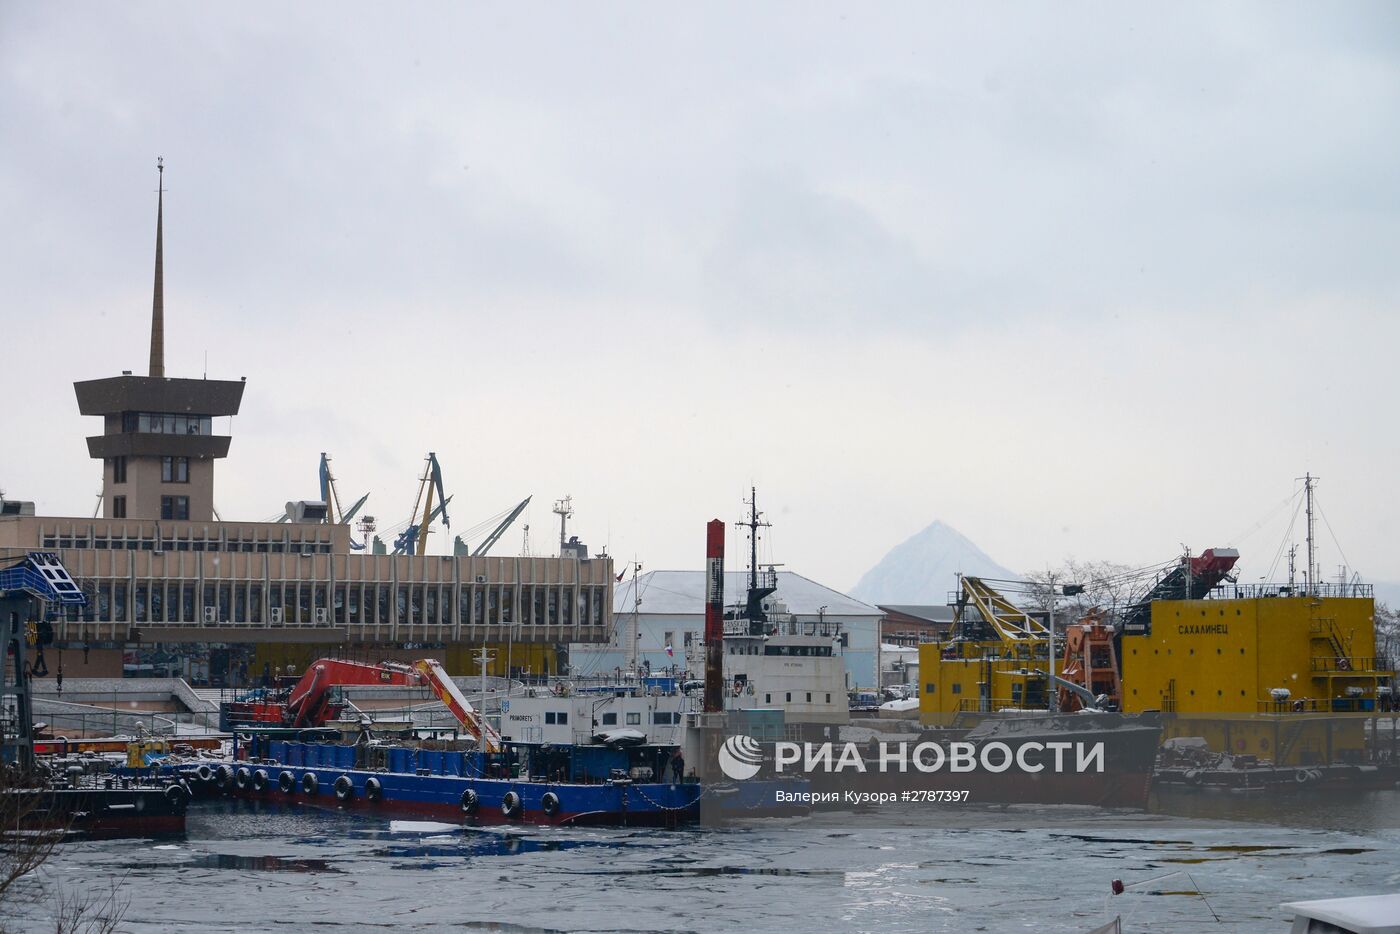 Танкер "Роснефть Сахалин" подготовлен к буксировке из Находки во Владивосток для достройки